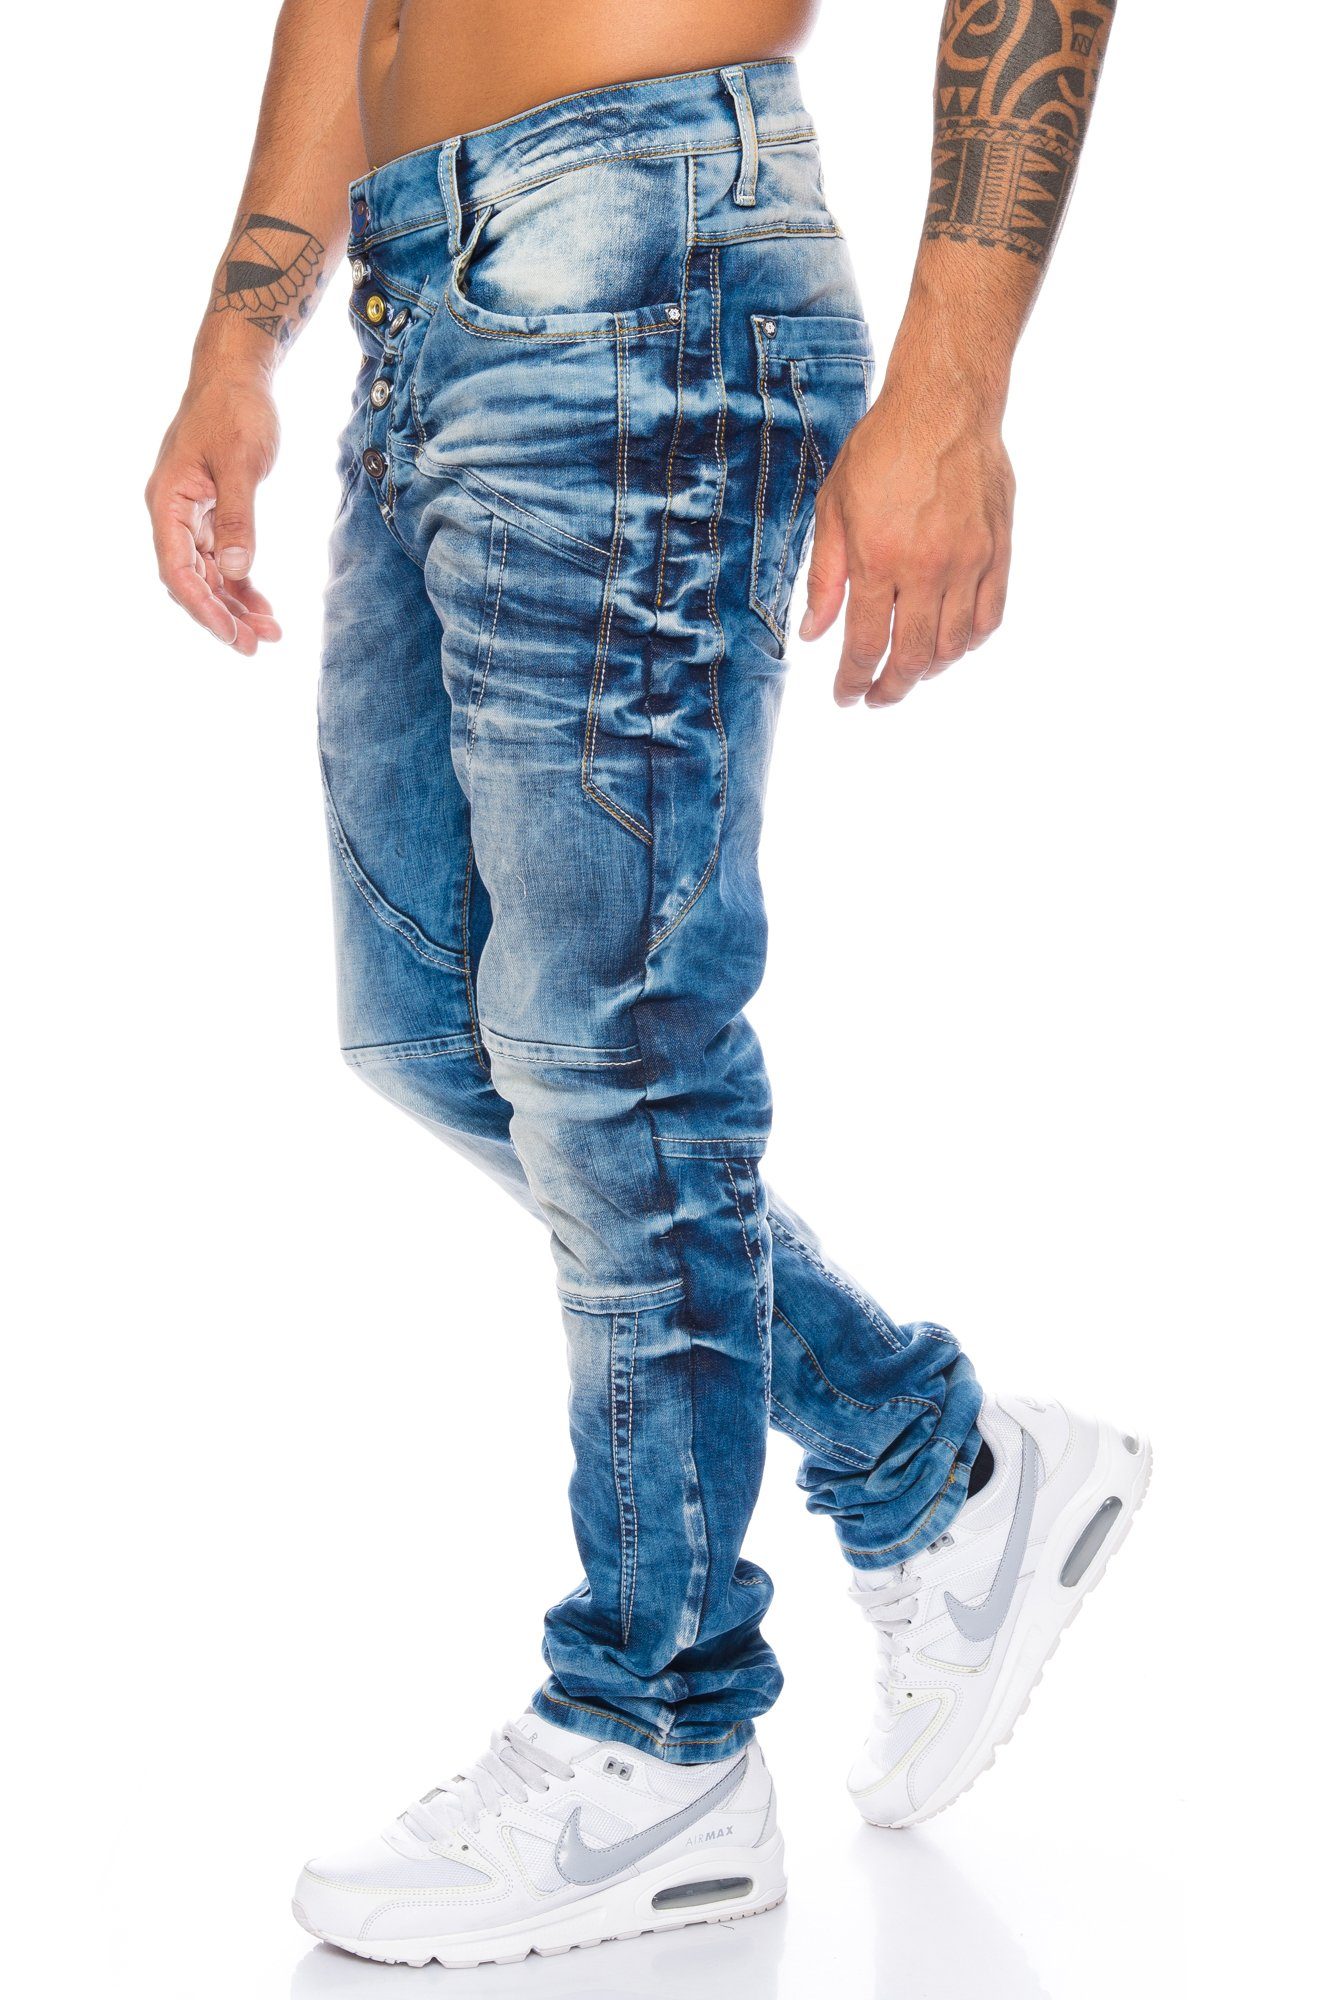 Hingucker aufwendigen Nahtstrukturen mit Herren & und Bunte für Cipo Knopfleiste Baxx Jeans dezenten Verschlussknöpfe Regular-fit-Jeans